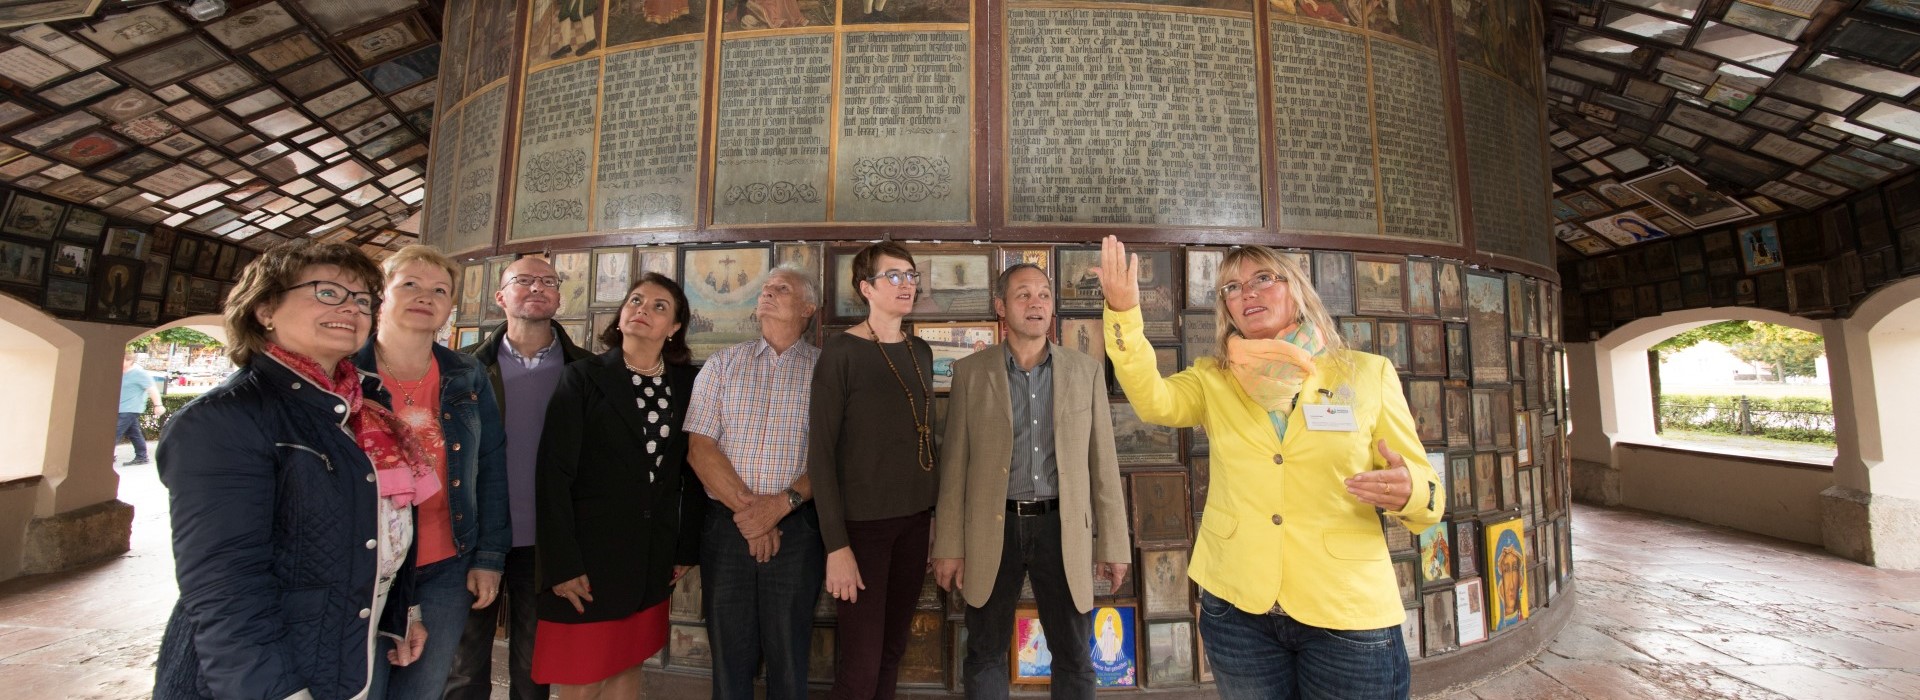 Eine Stadtführungsgruppe steht im Umgang der Gnadenkapelle in Altötting während die Stadtführerin der Gruppe die Votivtafeln erläutert. 